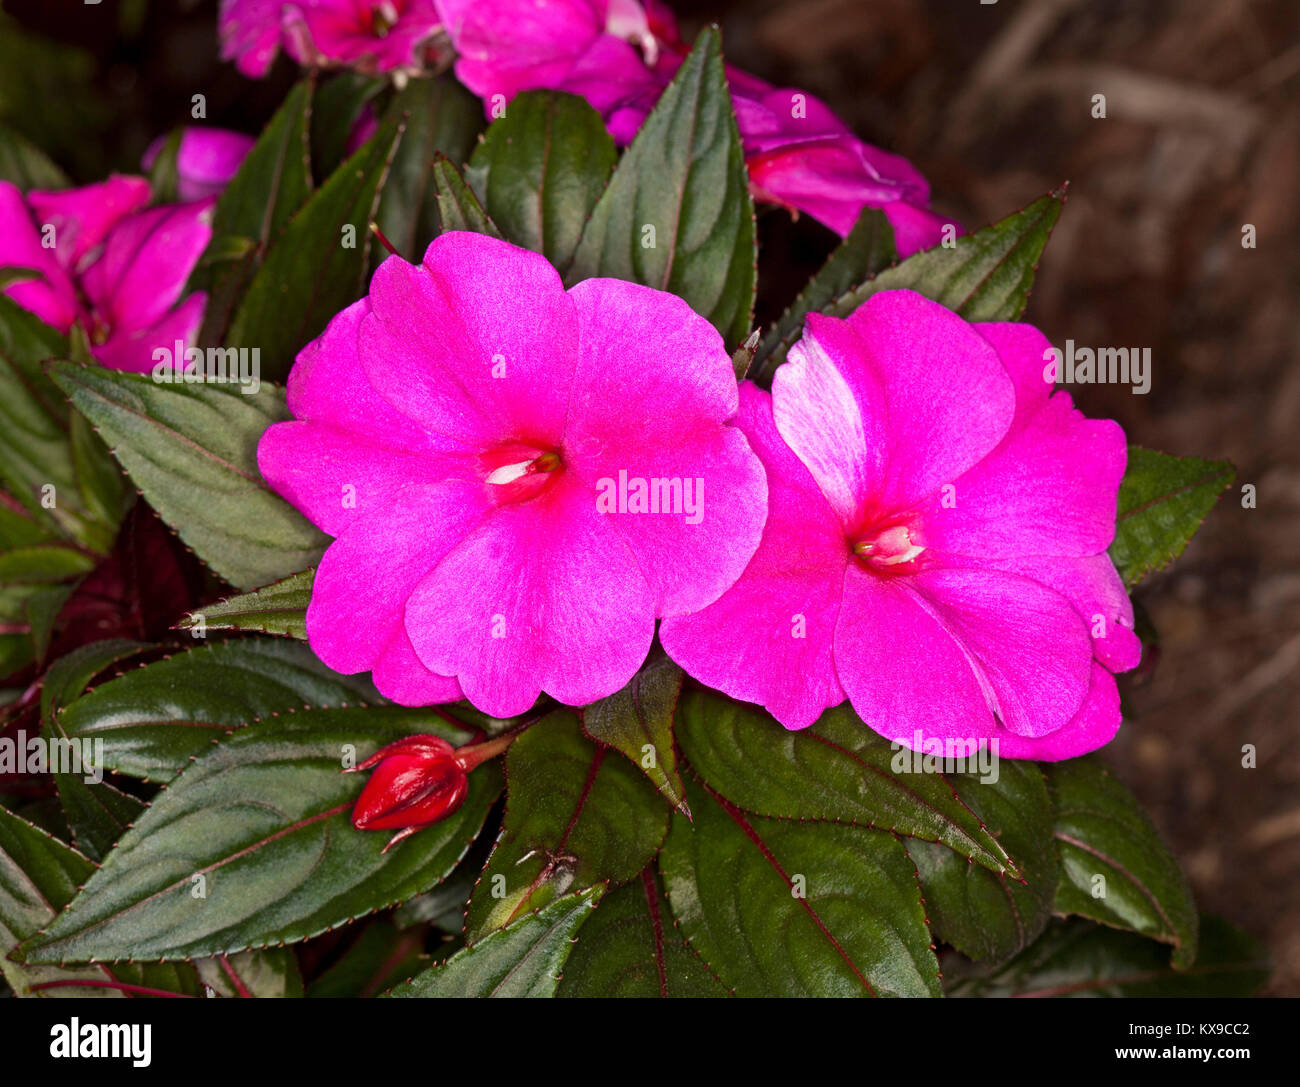 Vividi fiori rosa della Nuova Guinea impatiens Impatiens hawkerii "Magnum' sullo sfondo di foglie di colore verde scuro Foto Stock